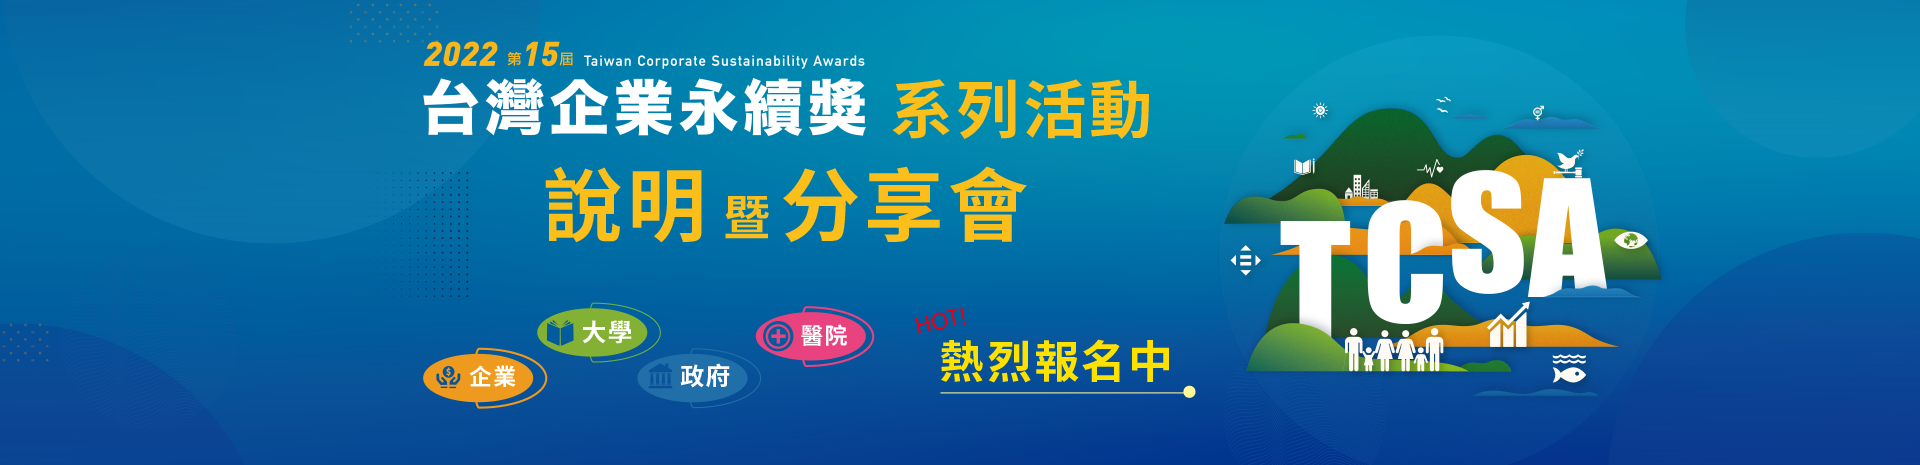 2022 第15屆台灣企業永續獎系列活動說明暨分享會熱烈報名中